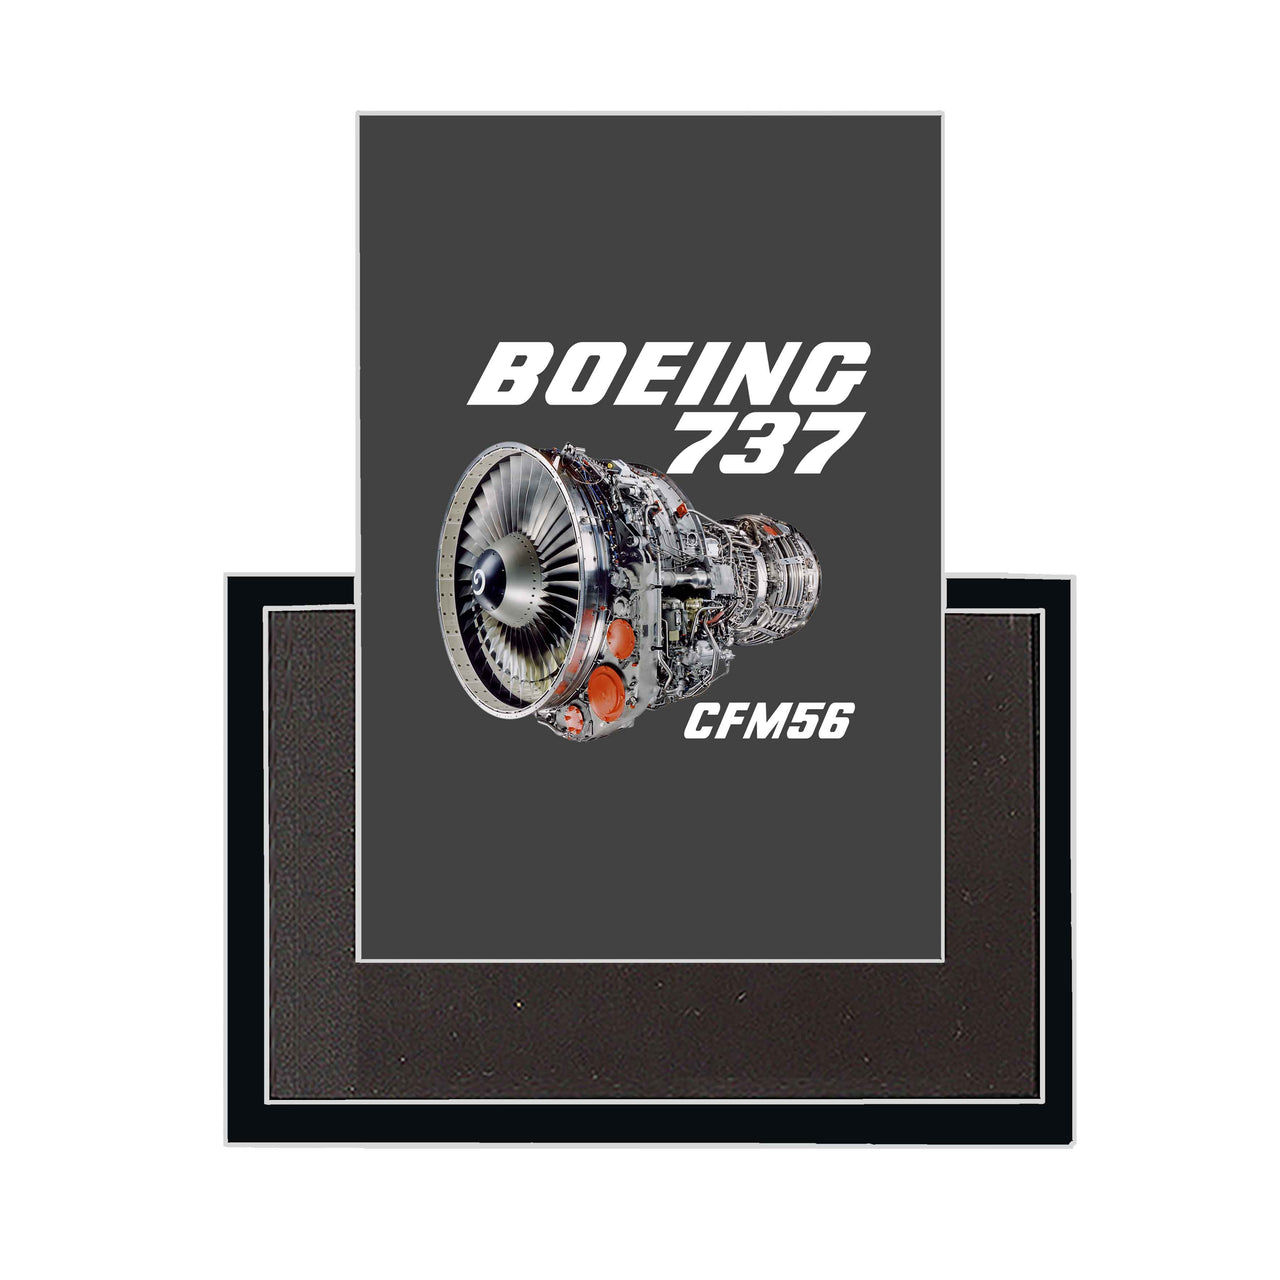 Boeing 737 Engine & CFM56 Designed Magnets